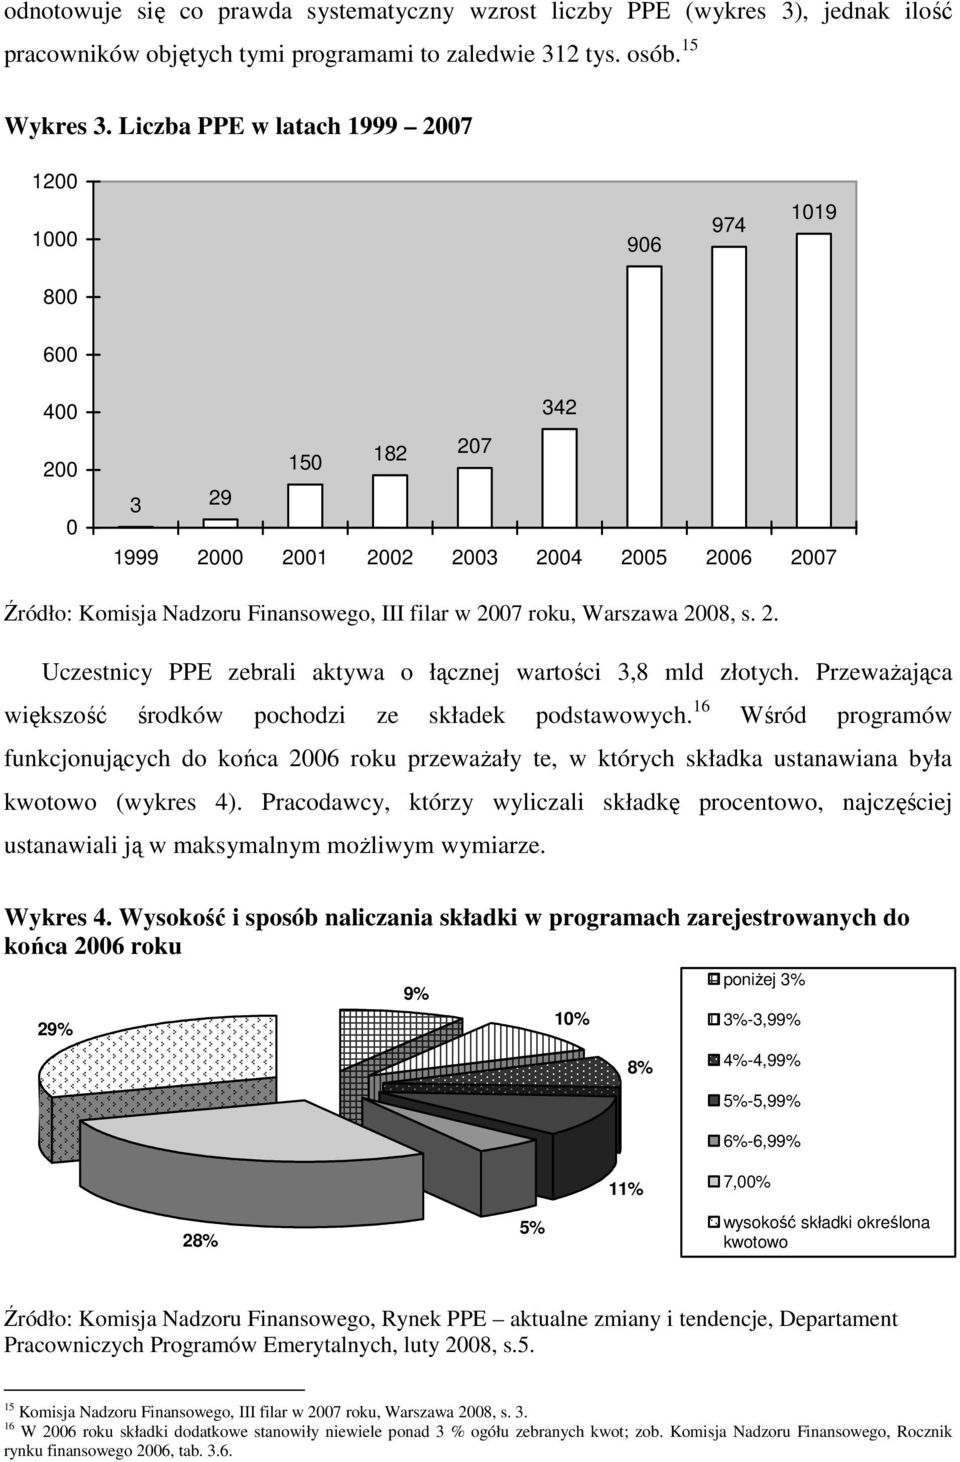 Warszawa 2008, s. 2. Uczestnicy PPE zebrali aktywa o łącznej wartości 3,8 mld złotych. Przeważająca większość środków pochodzi ze składek podstawowych.